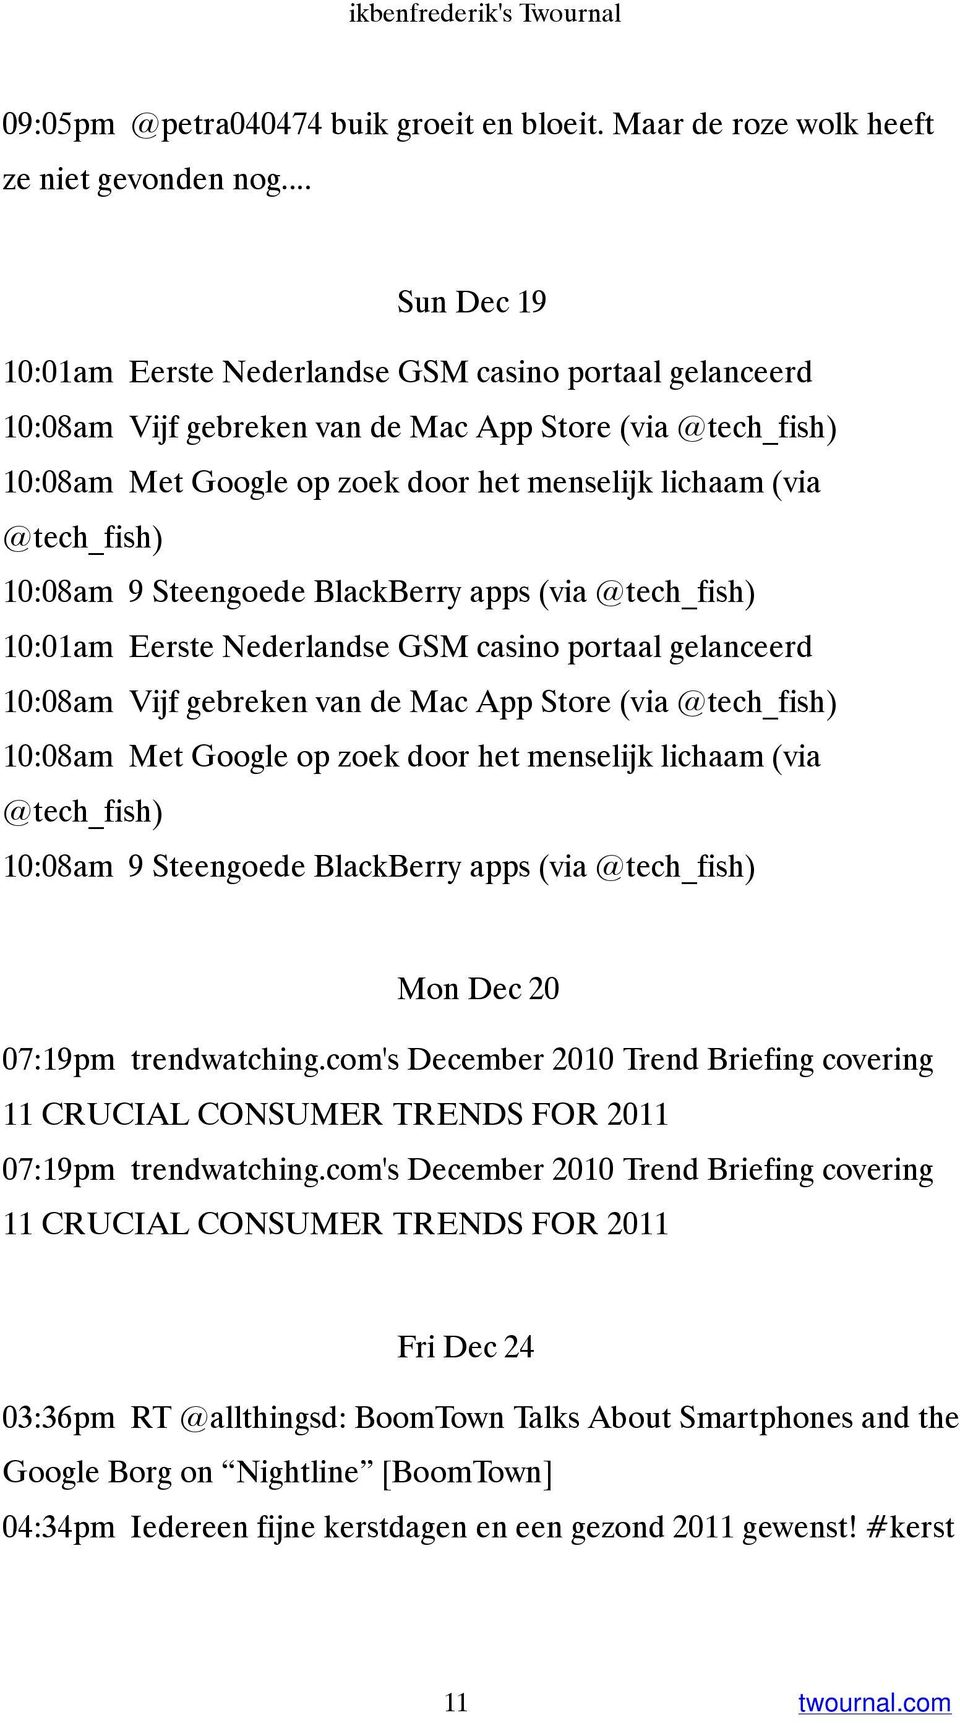 @tech_fish) 10:08am 9 Steengoede BlackBerry apps (via @tech_fish) 10:01am Eerste Nederlandse GSM casino portaal gelanceerd 10:08am Vijf gebreken van de Mac App Store (via @tech_fish) 10:08am Met